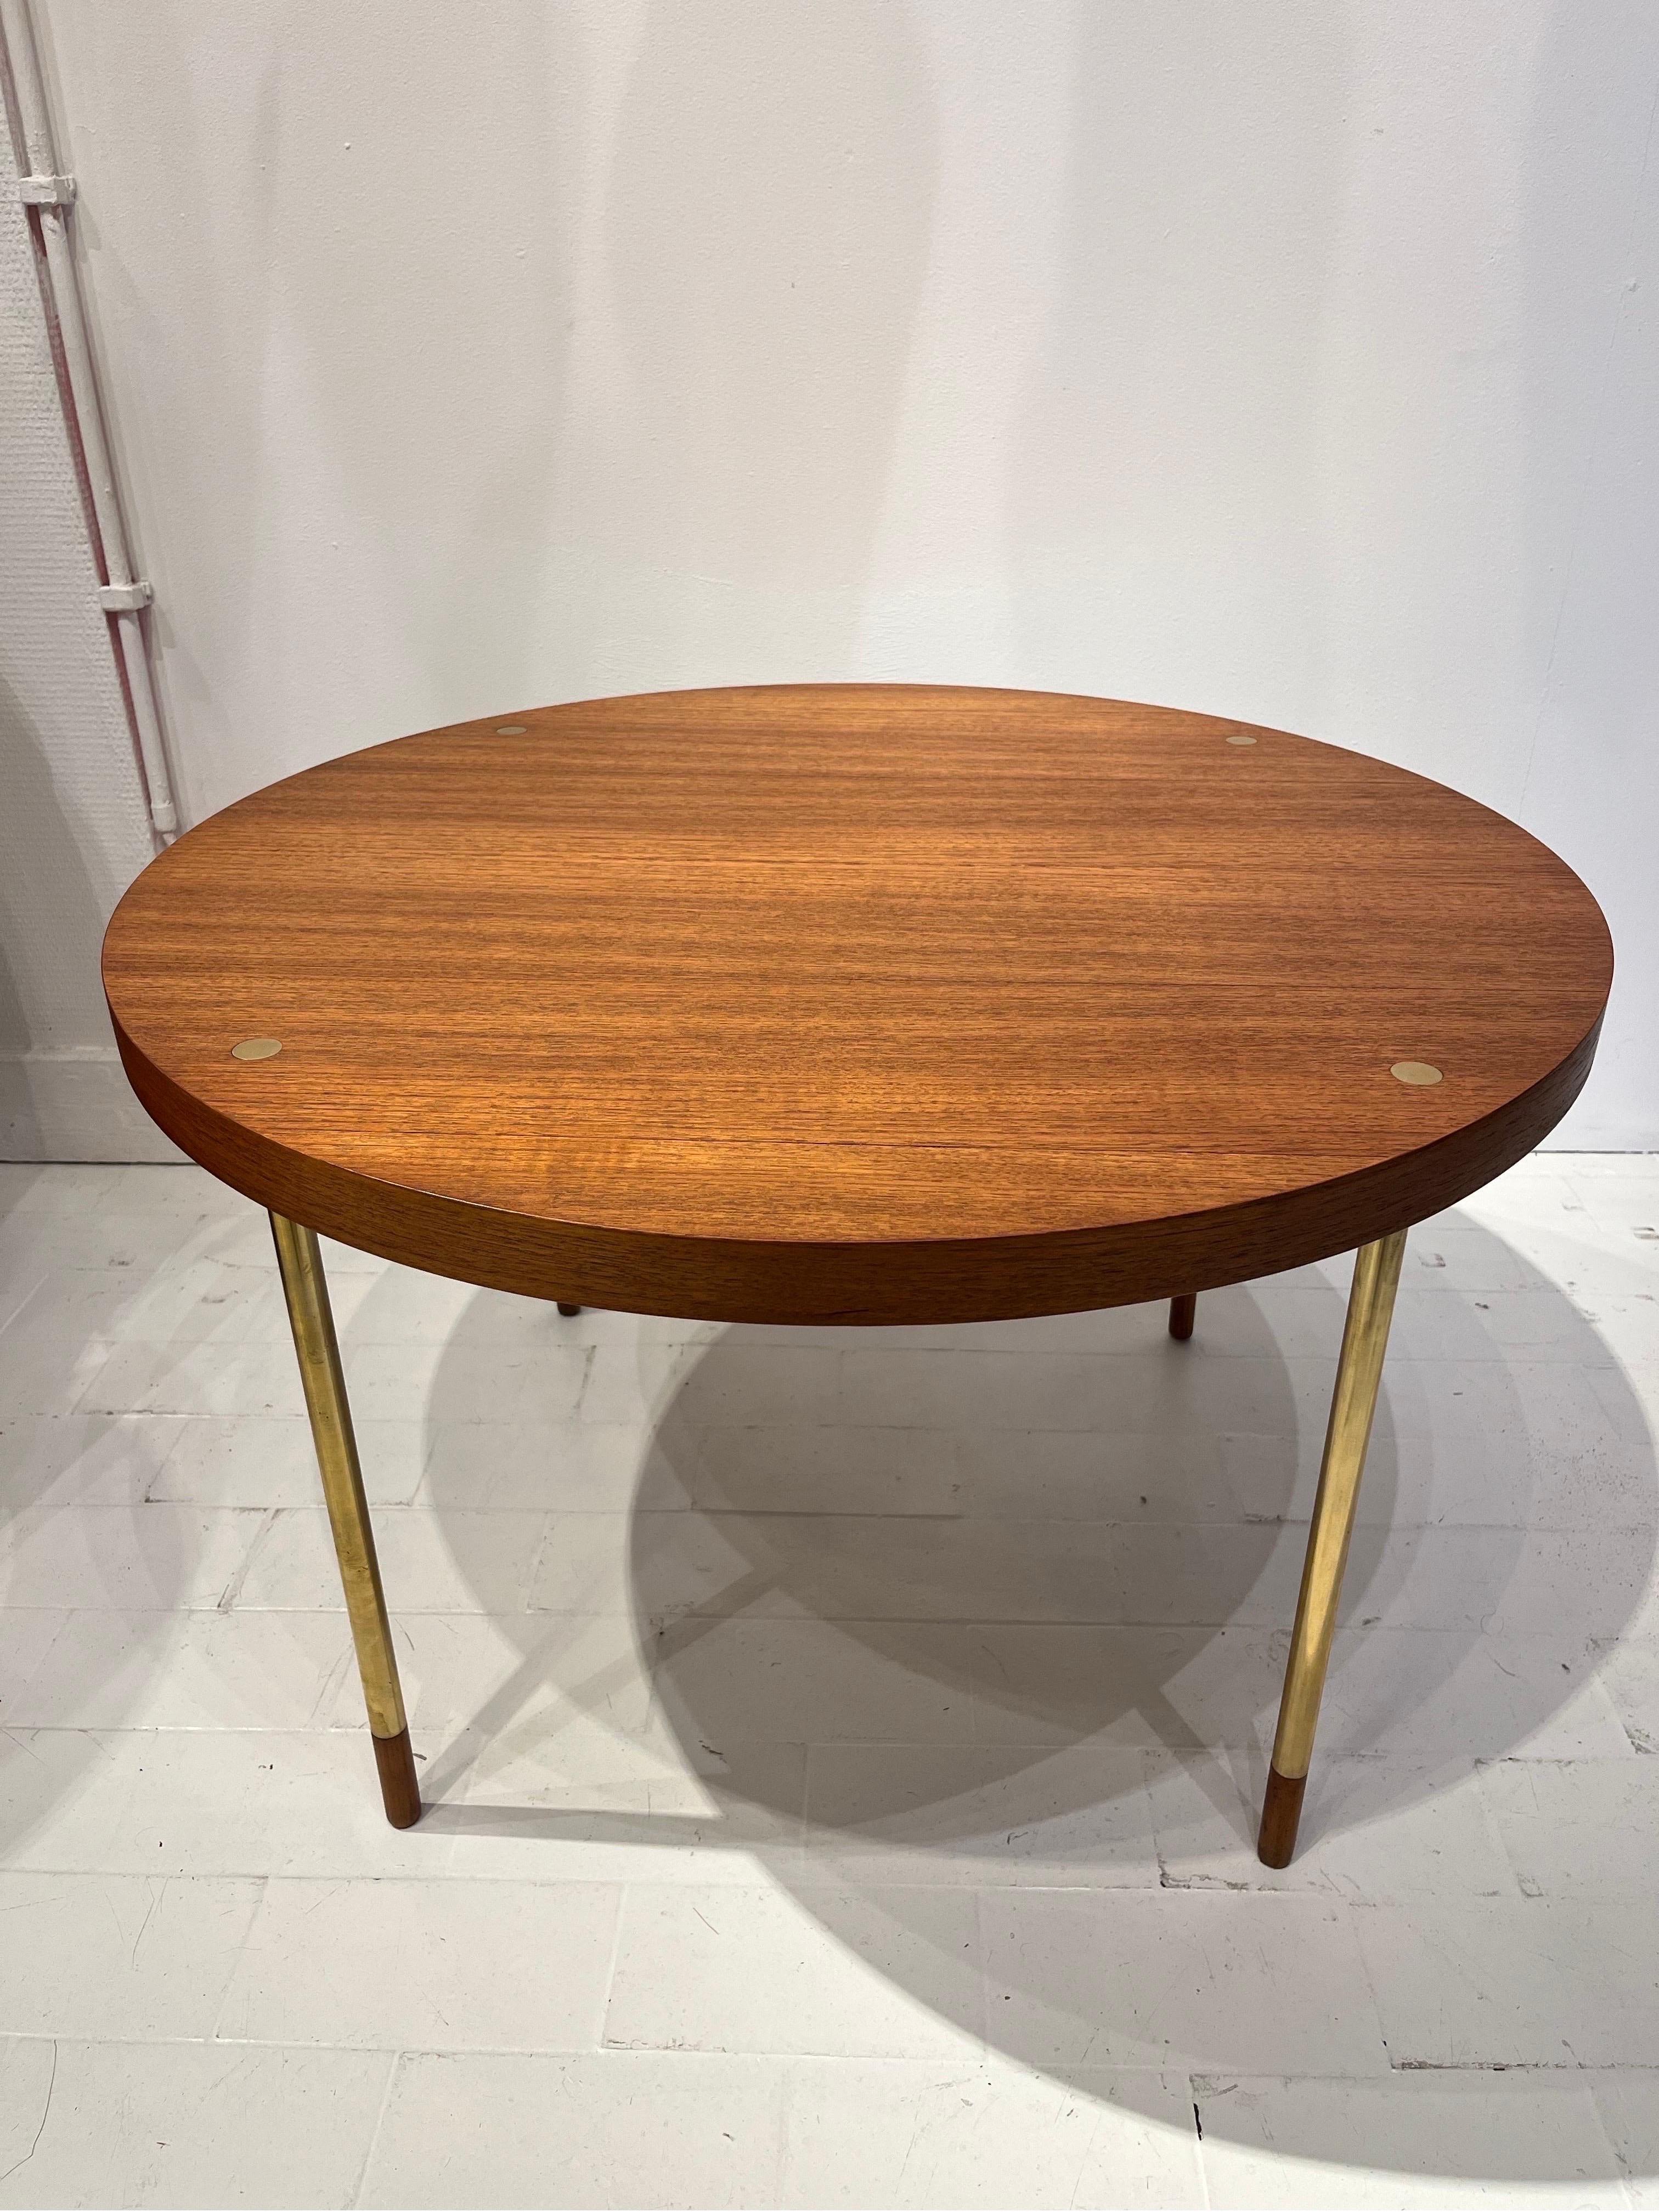 Der vorliegende Tisch ist aus Messing und italienischem Nussbaumfurnier gefertigt. Das Design erinnert an die Arbeiten von Ettore Sottsass, der dieses Prinzip der inkrustierten Füße in der Platte verwendete. Der Kontrast zwischen dem Holz und dem